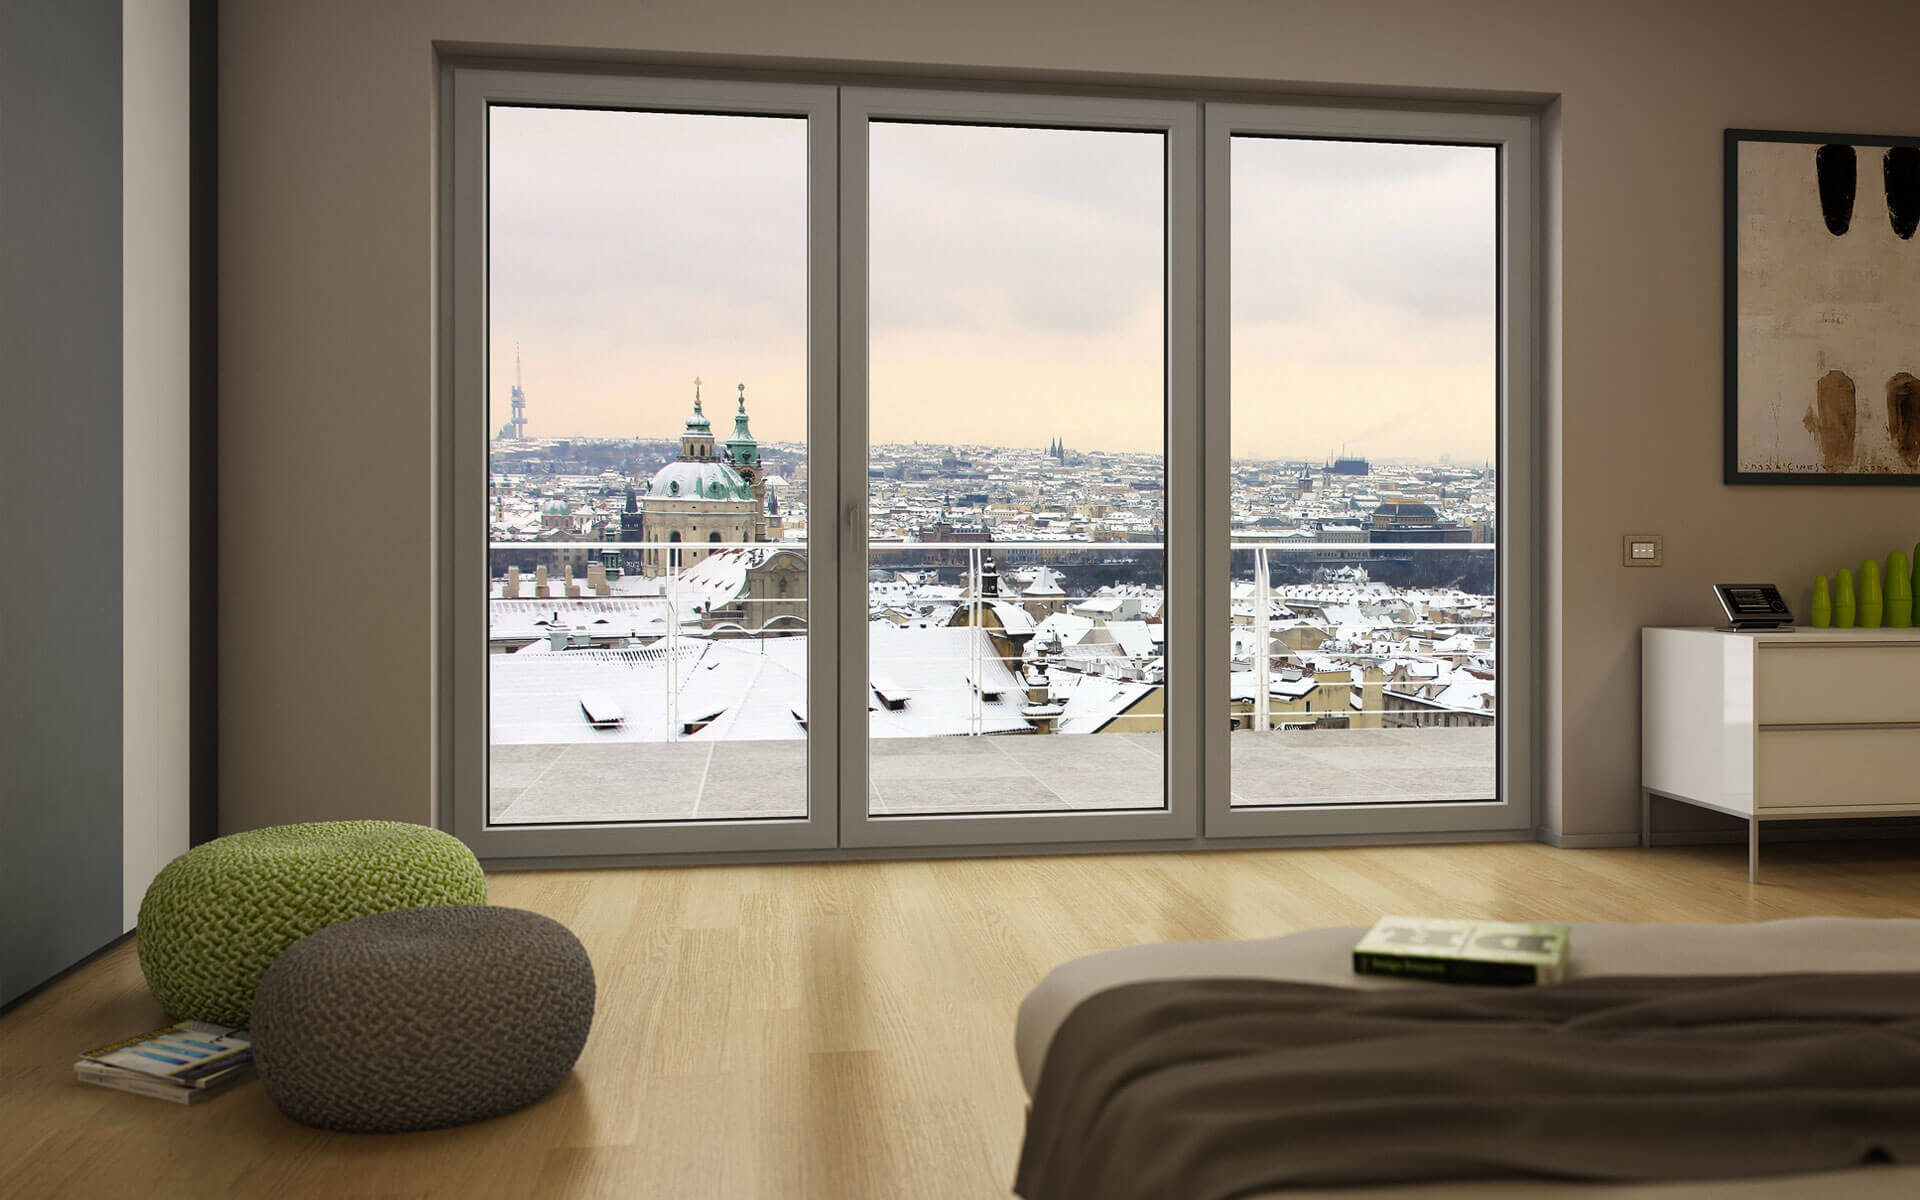 Camera da letto con finestre in pvc ad alto isolamento termico